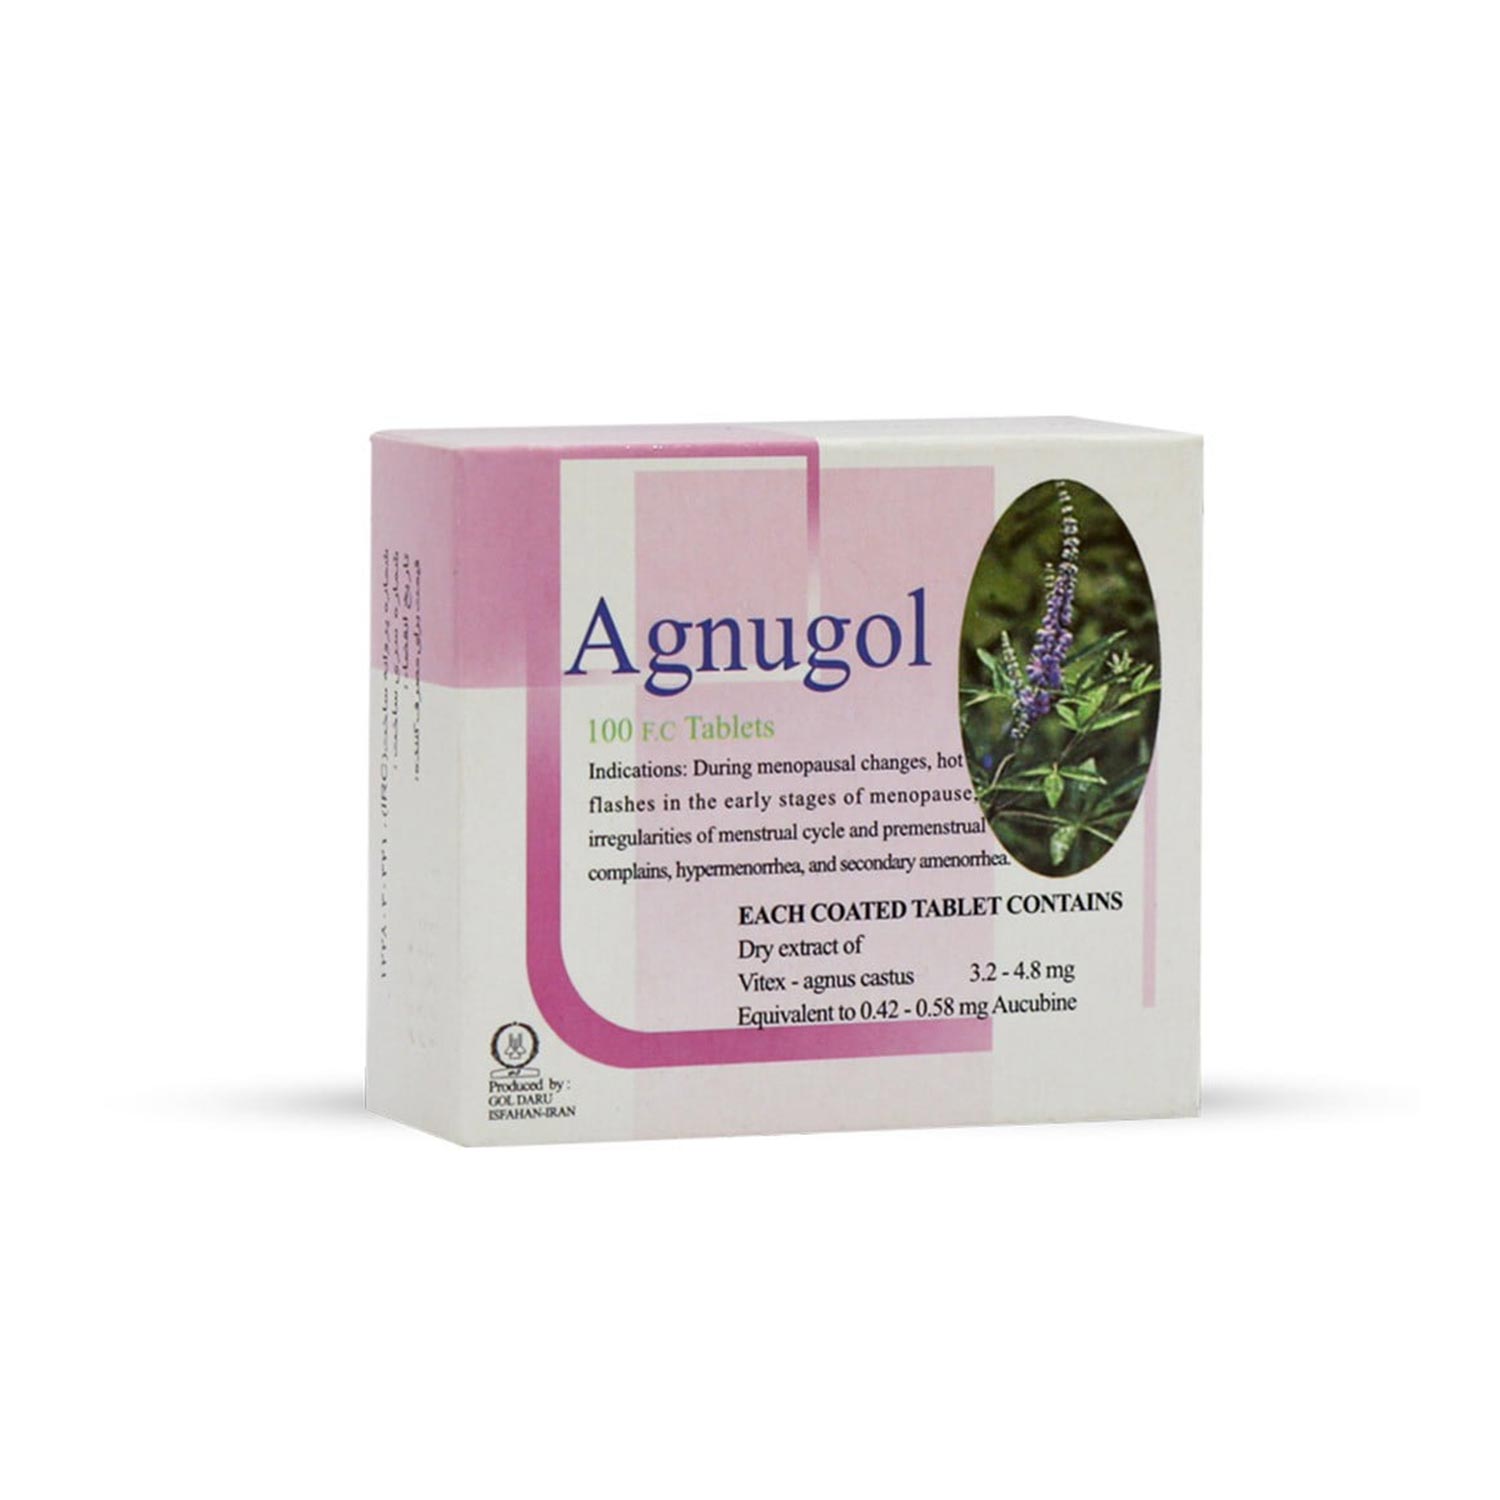 قرص گیاهی آگنوگل (agnugol) گل دارو